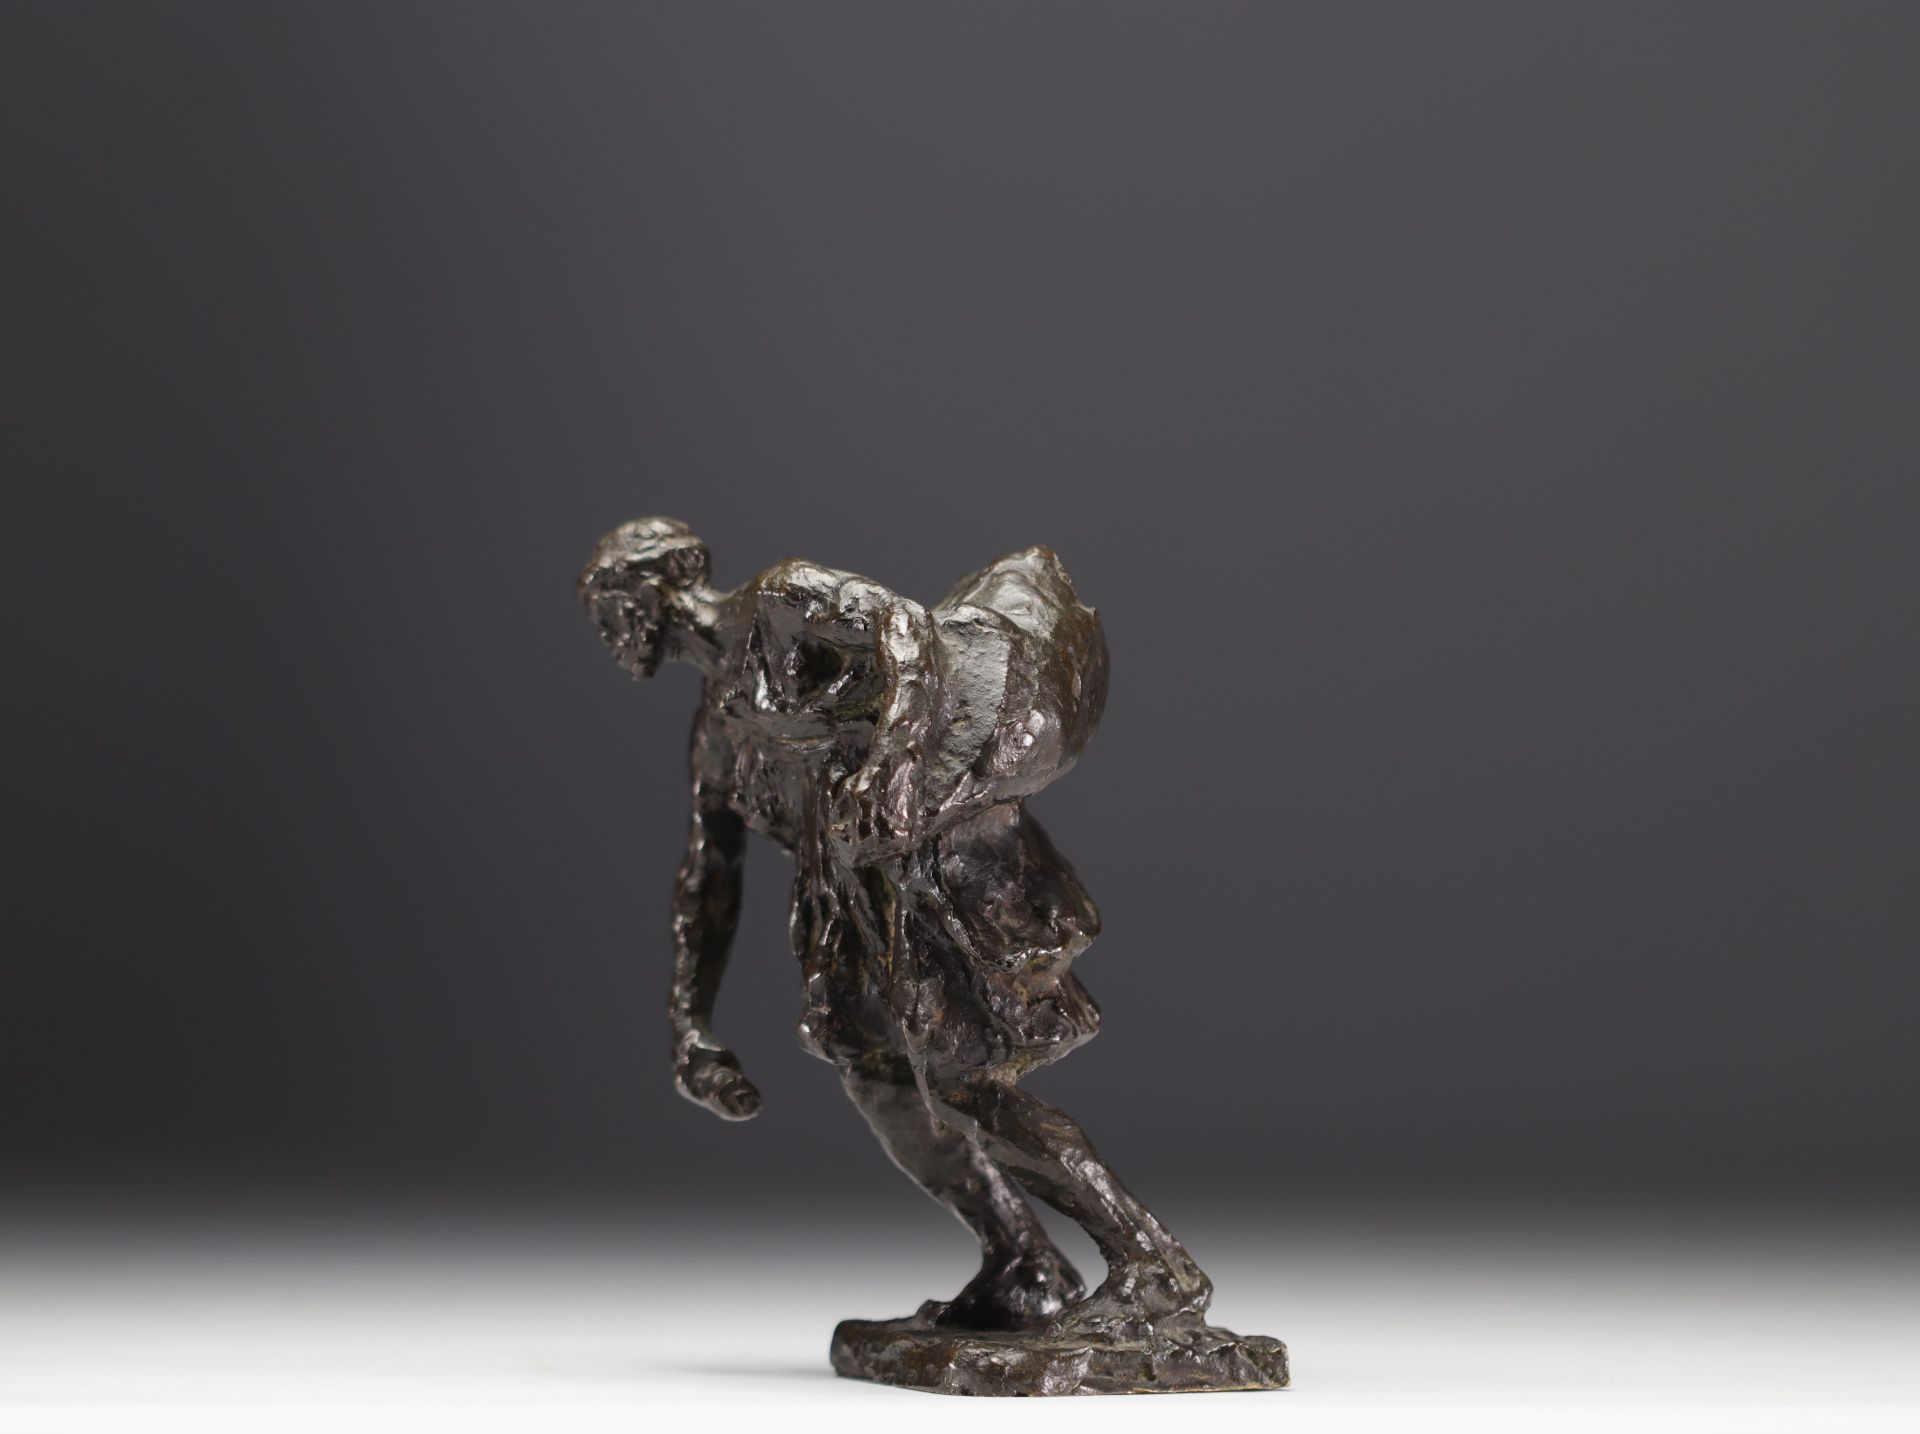 Gaston BROQUET (1880-1947) "The bag bearer" Orientalist bronze. - Image 3 of 5